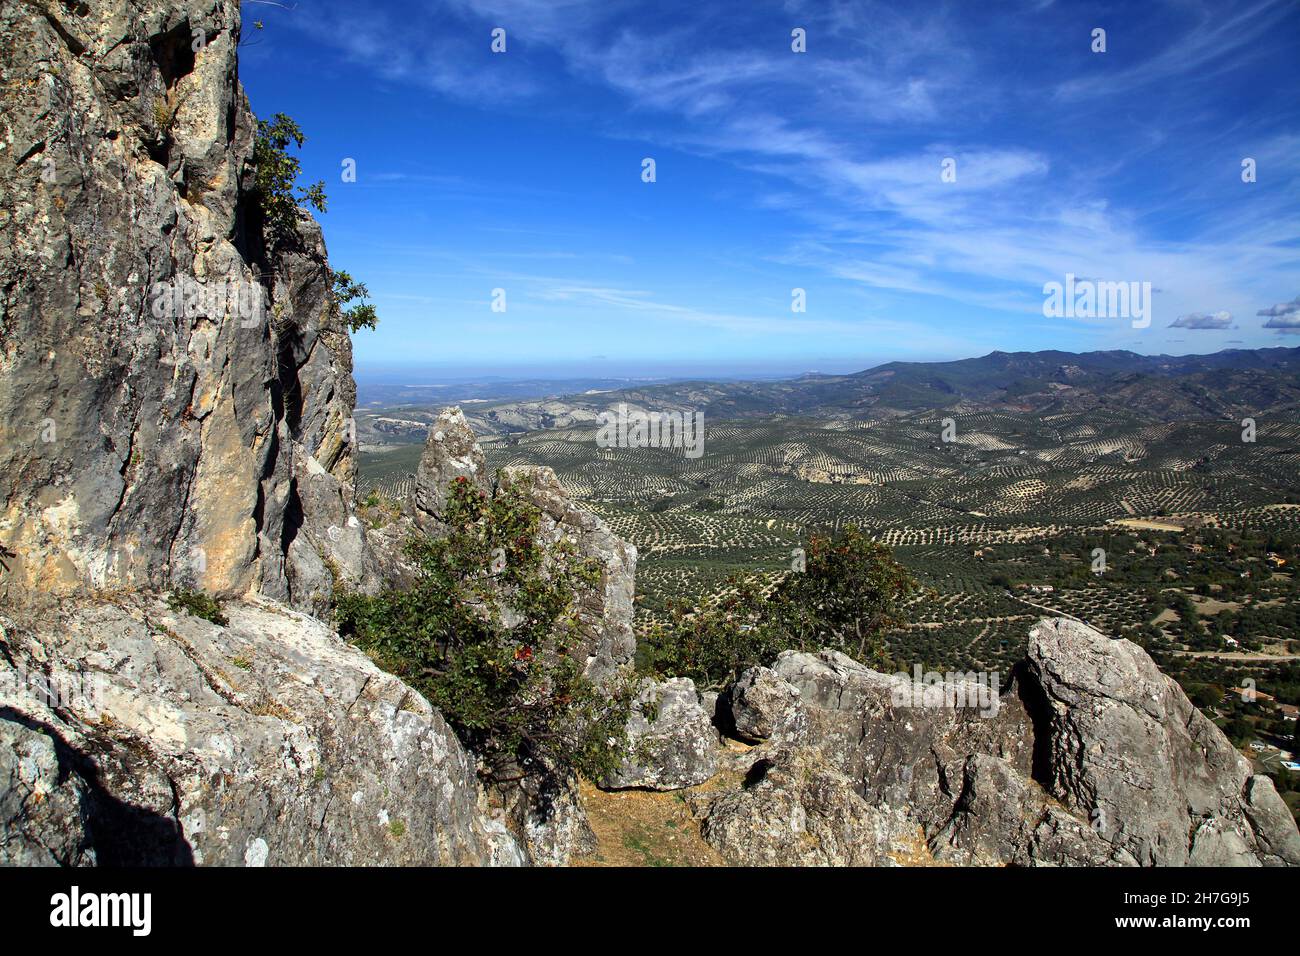 Cazorla est une municipalité d'Espagne située dans la province de Jaén, Andalousie.Parc naturel de Sierras de Cazorla, Segura y Las Villas naturel Banque D'Images